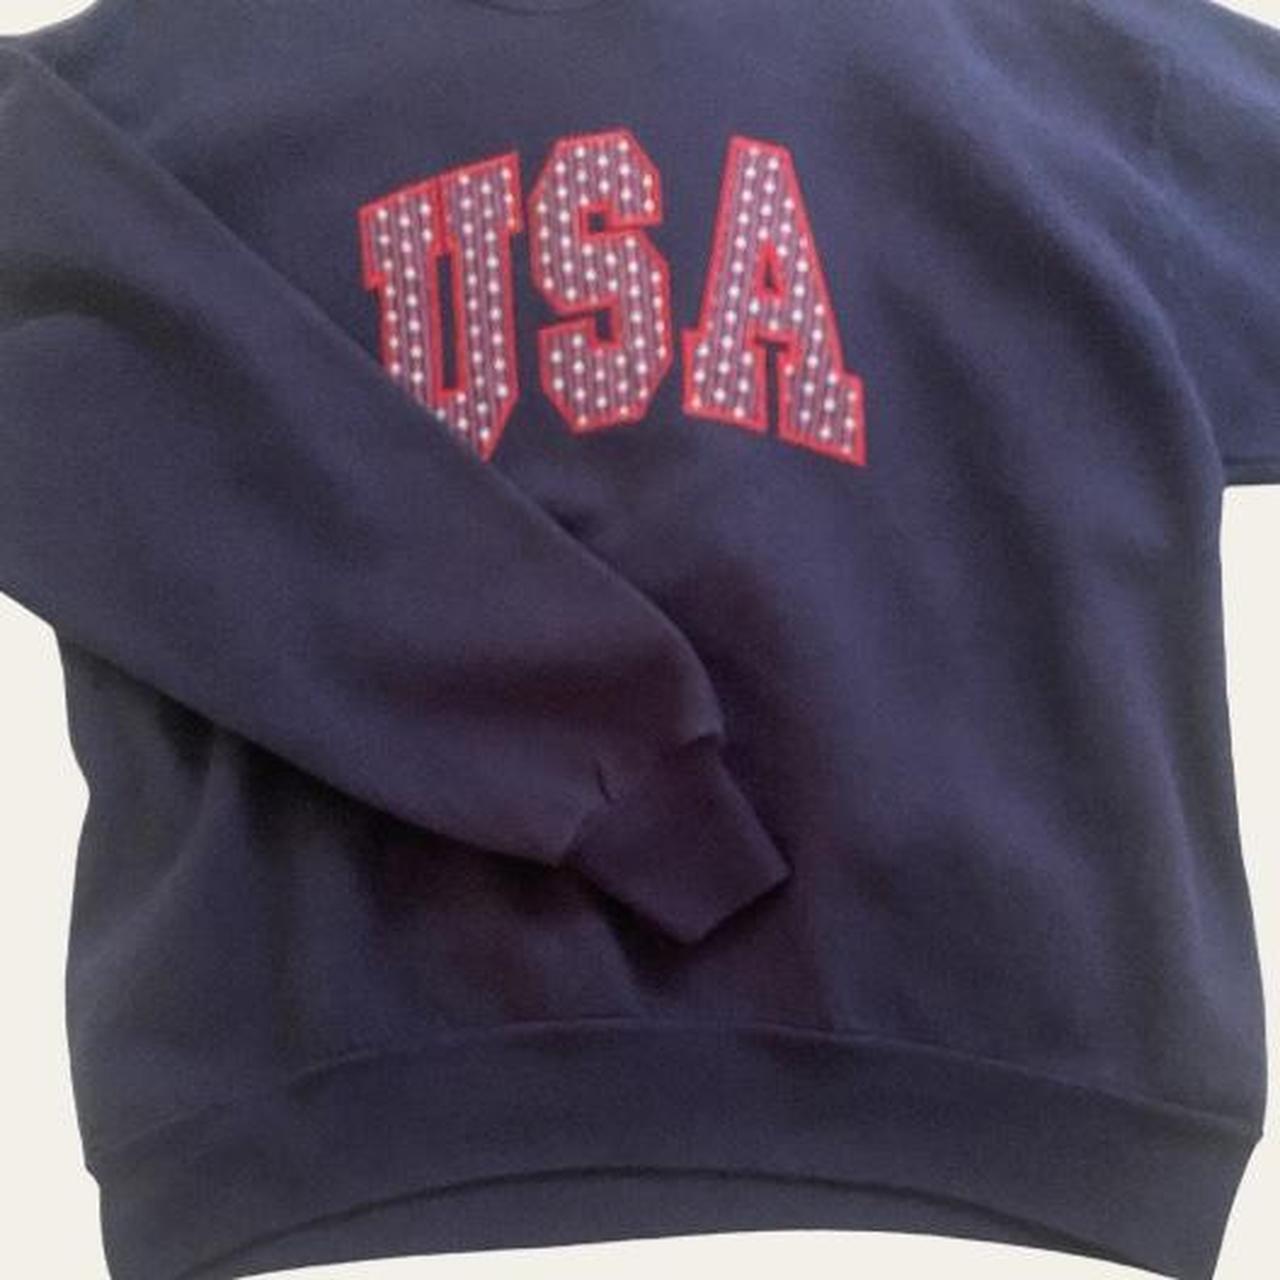 USA oversized sweatshirt ☆*: size large ☆*: no... - Depop